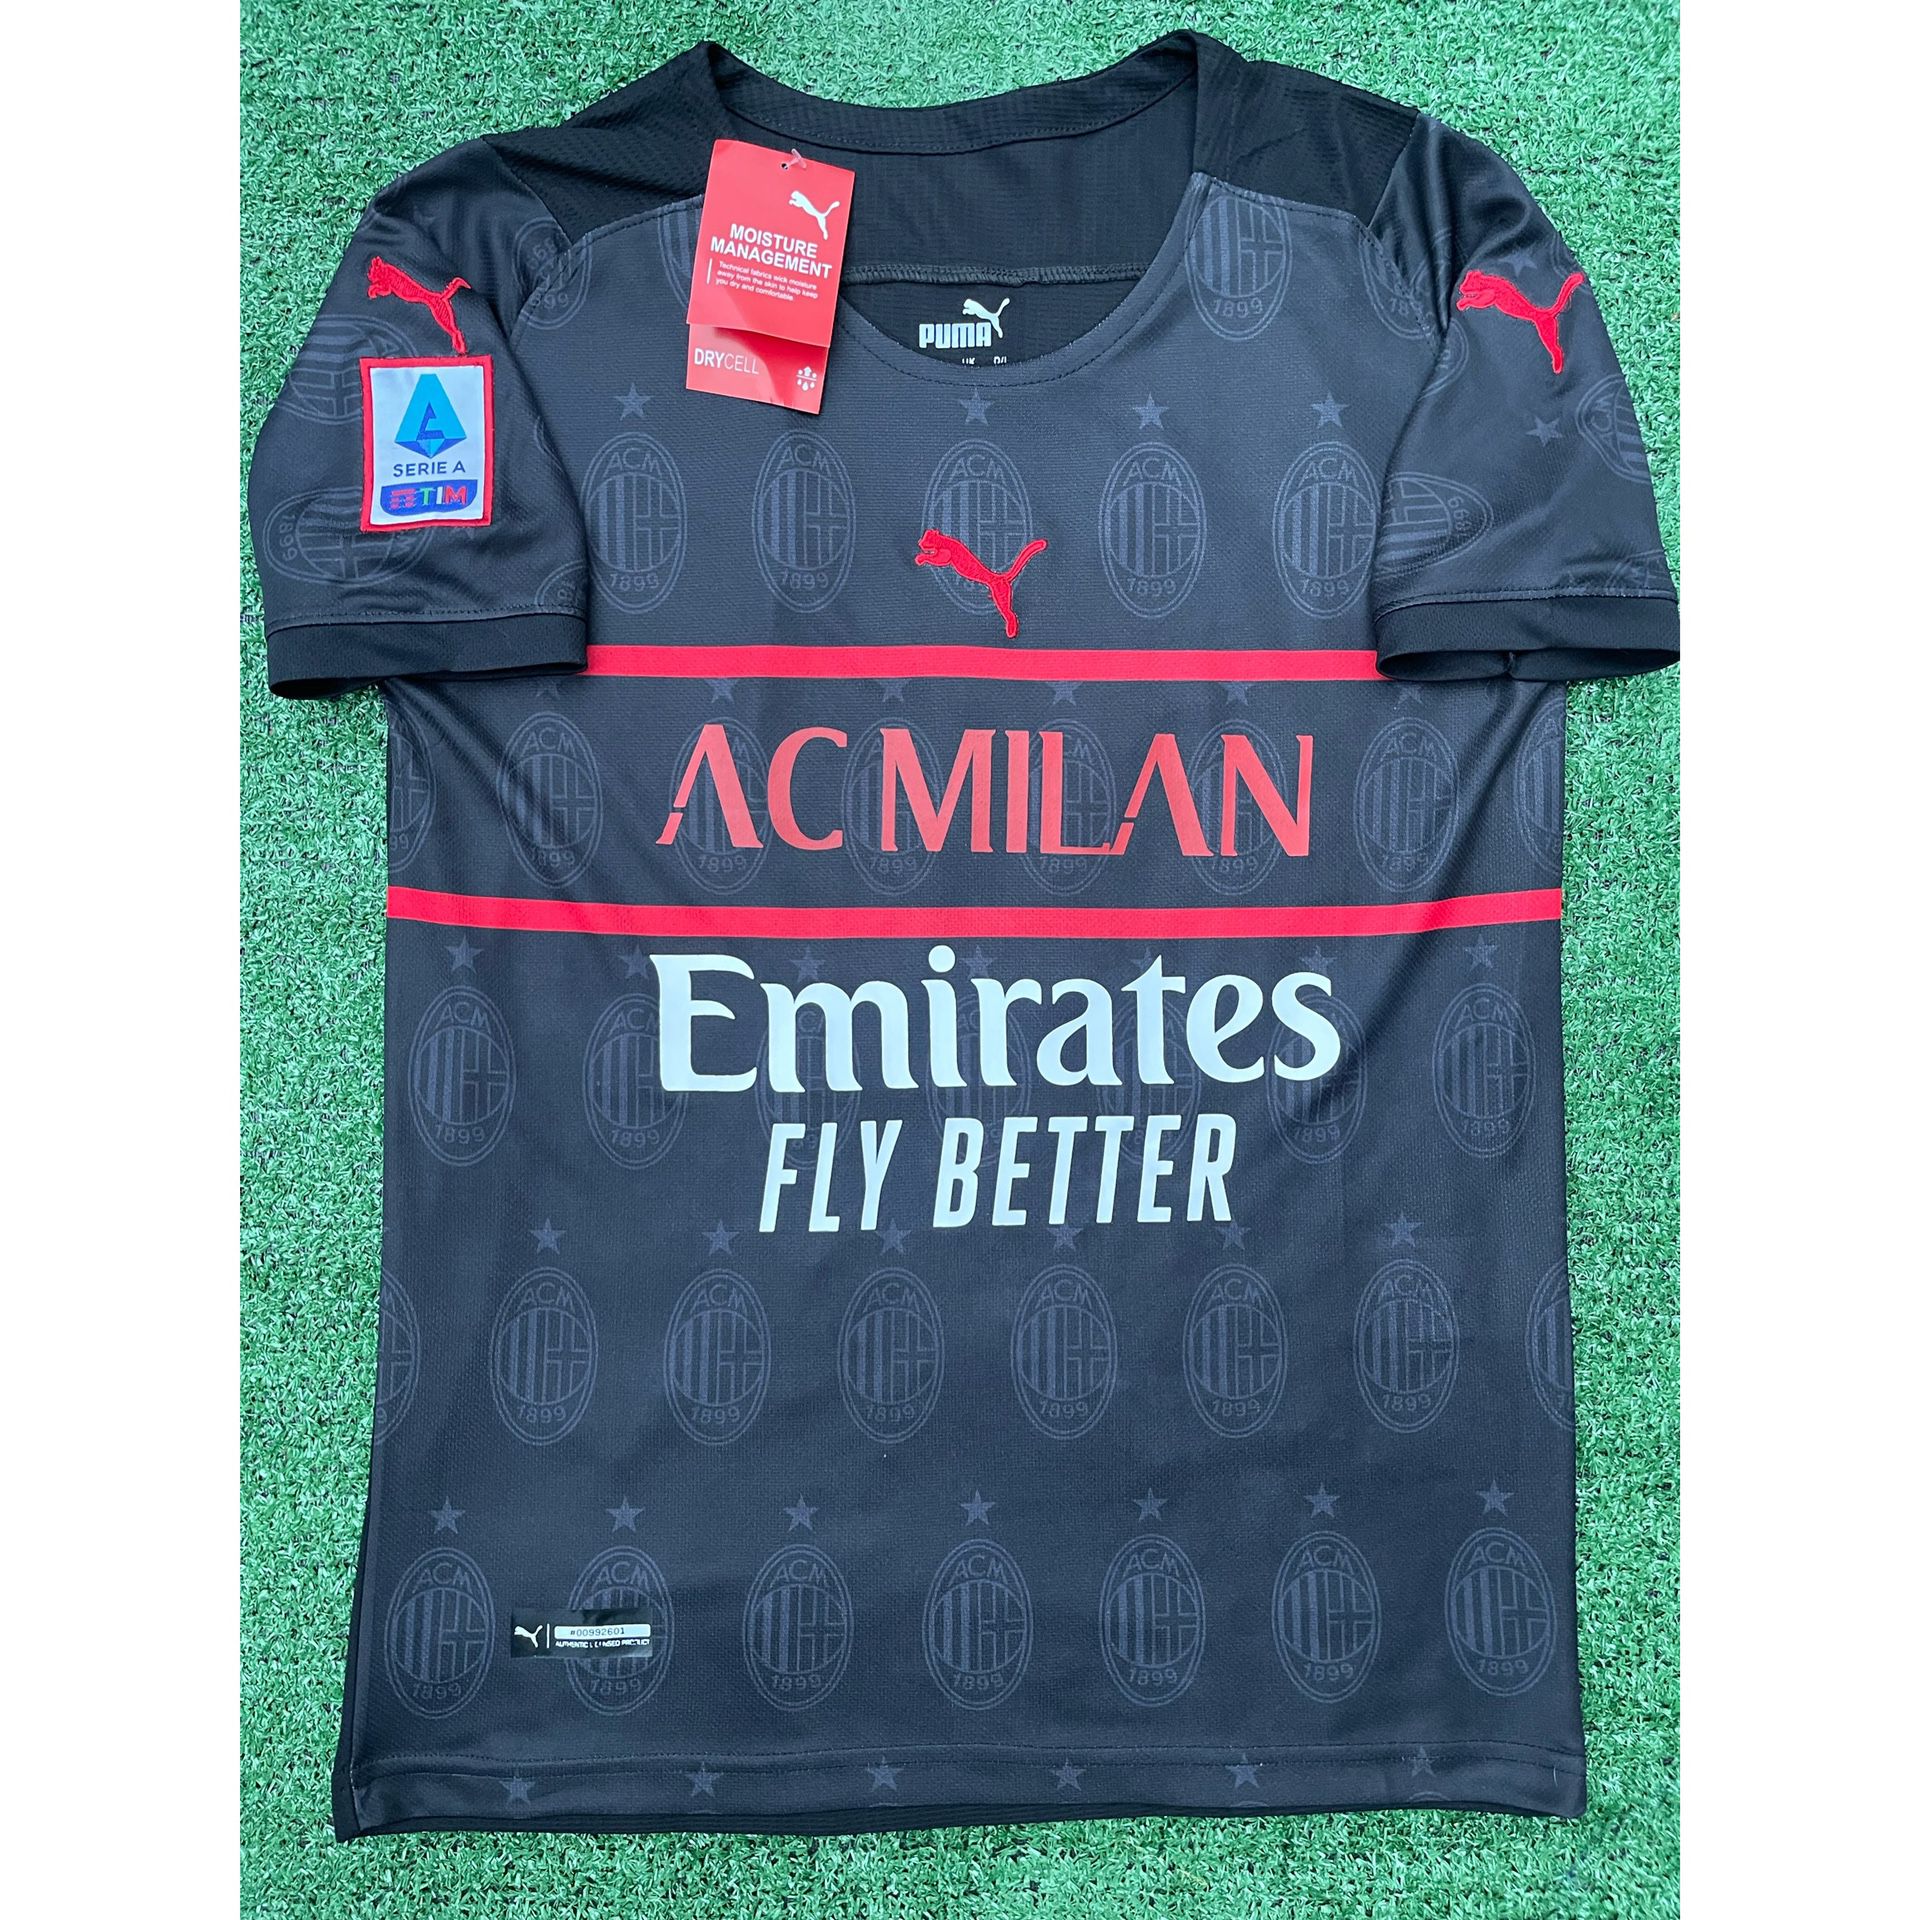 2021/22 AC Milan 3rd kit soccer jersey S